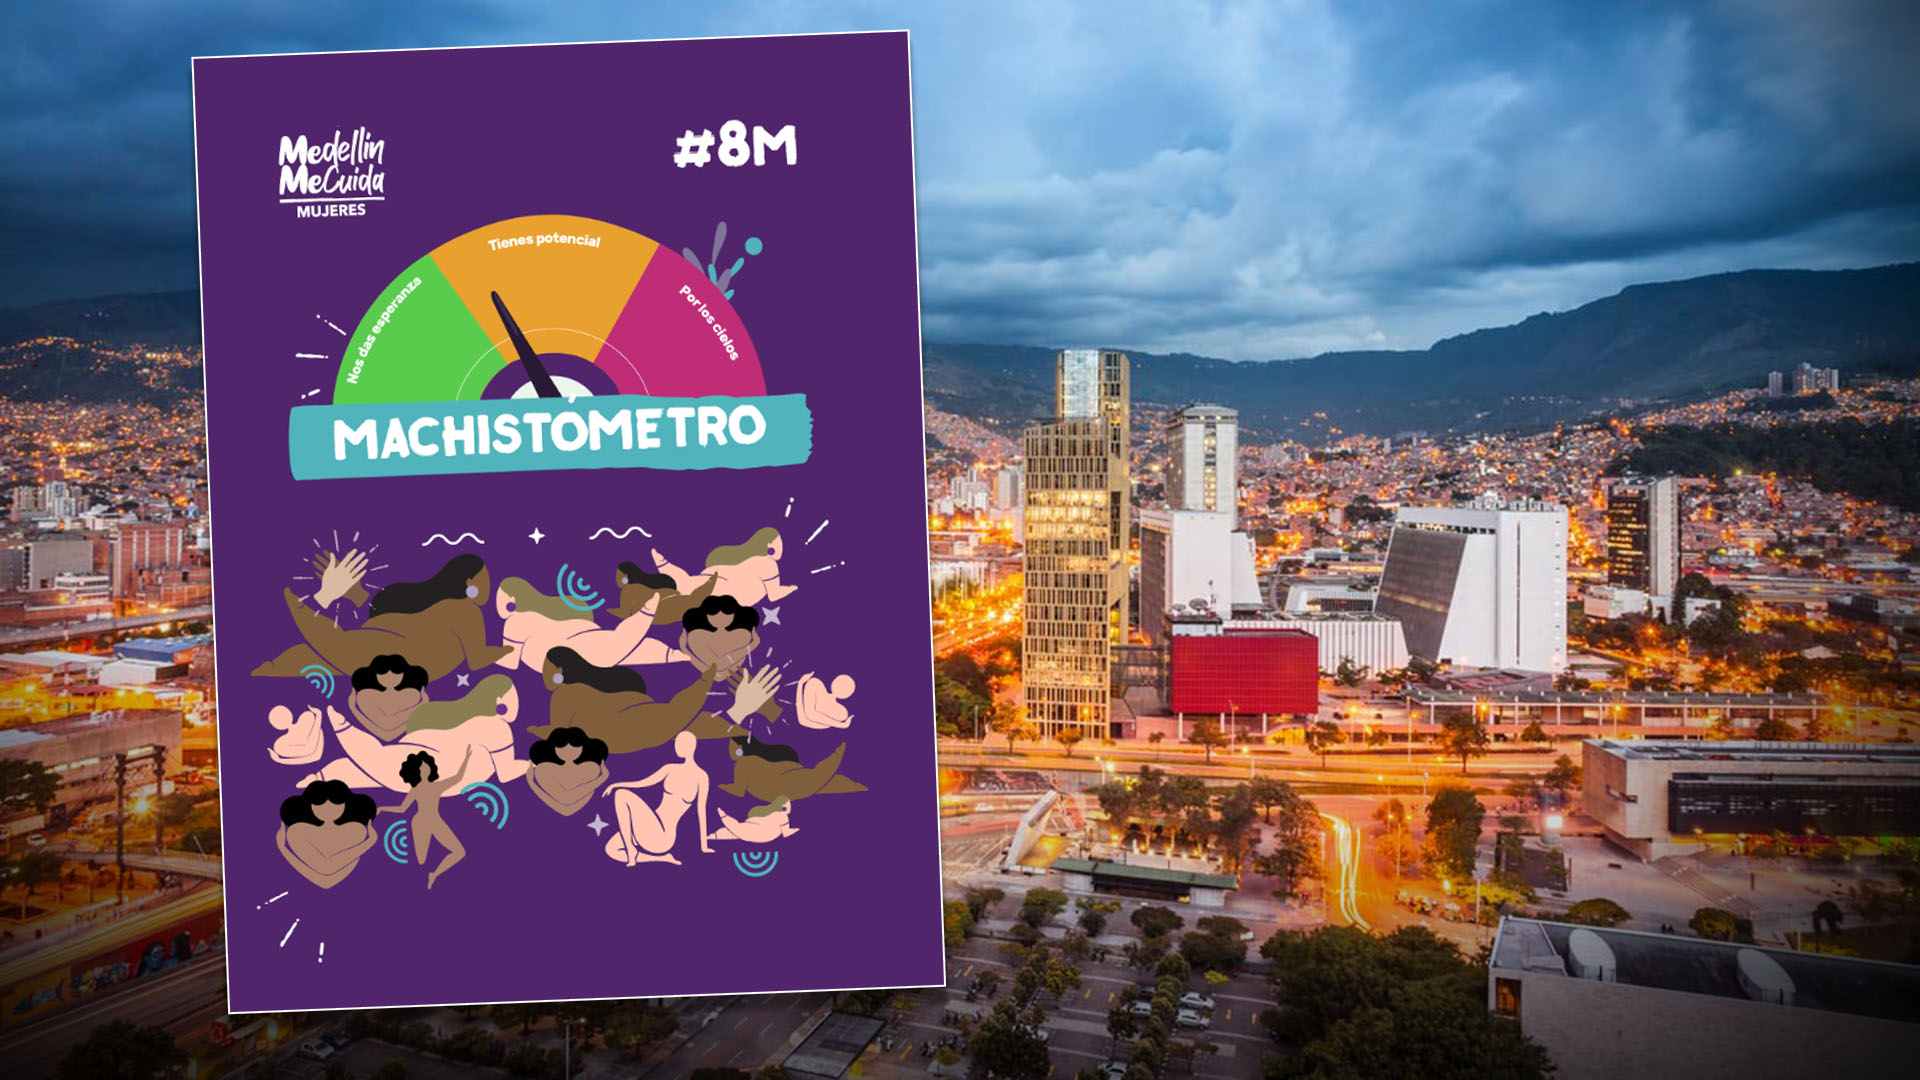 Así funciona el “Machistómetro”, la herramienta que implementó la Alcaldía de Medellín para medir sus niveles de machismo